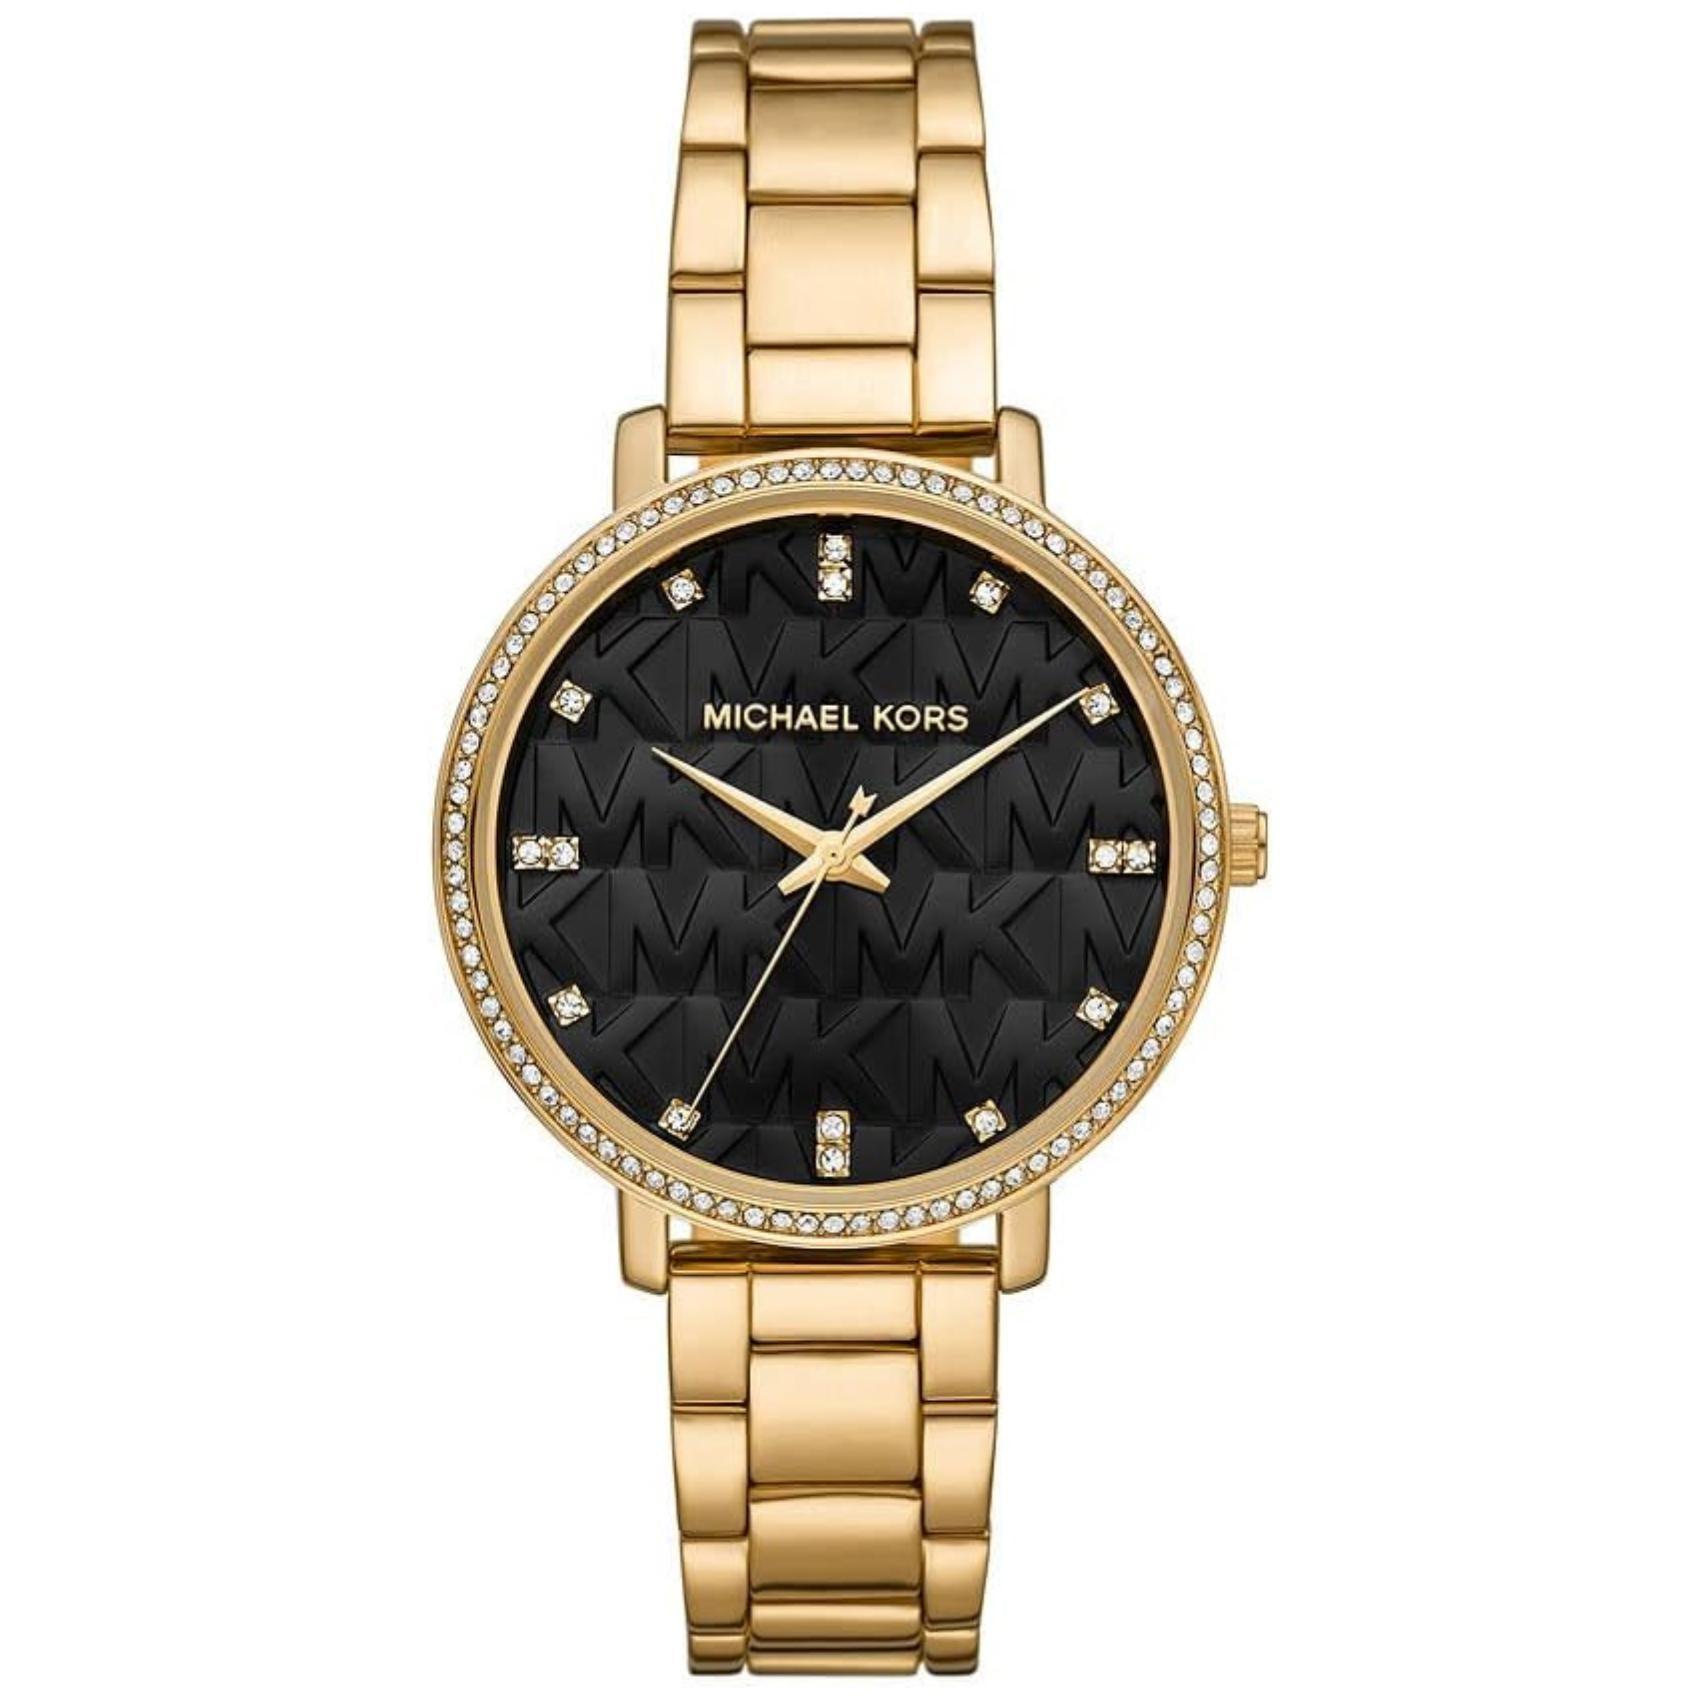 Γυναικείο ρολόι Michael Kors Pyper MK4593 με χρυσό ατσάλινο μπρασελέ, στρογγυλό μαύρο καντράν με ζιργκόν και στεφάνι 37mm.